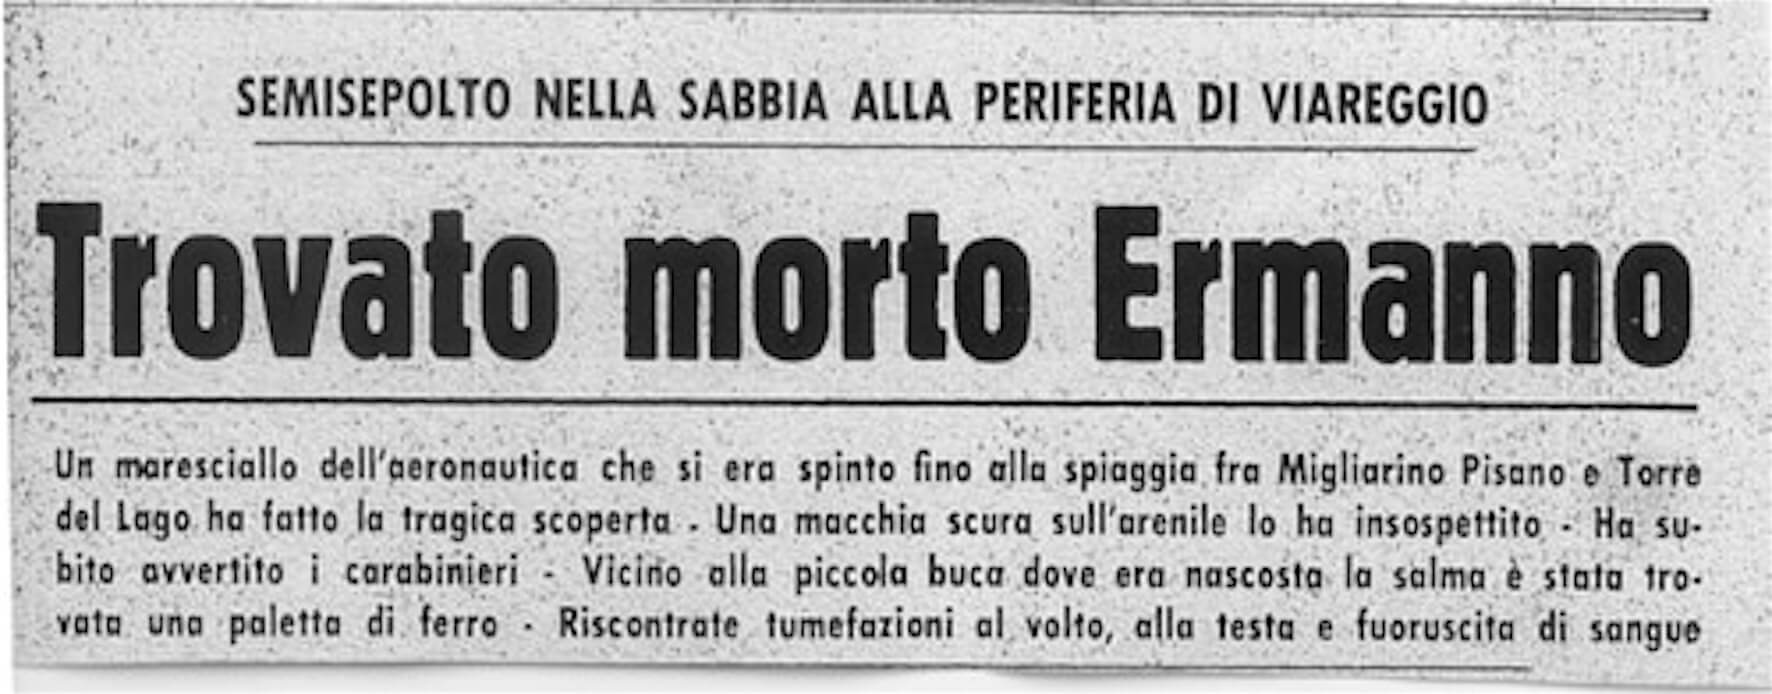 51 anni fa lo 'scandalo Lavorini'. Per la prima volta in Italia i gay vennero demonizzati e considerati mostri - articolo lavorini - Gay.it